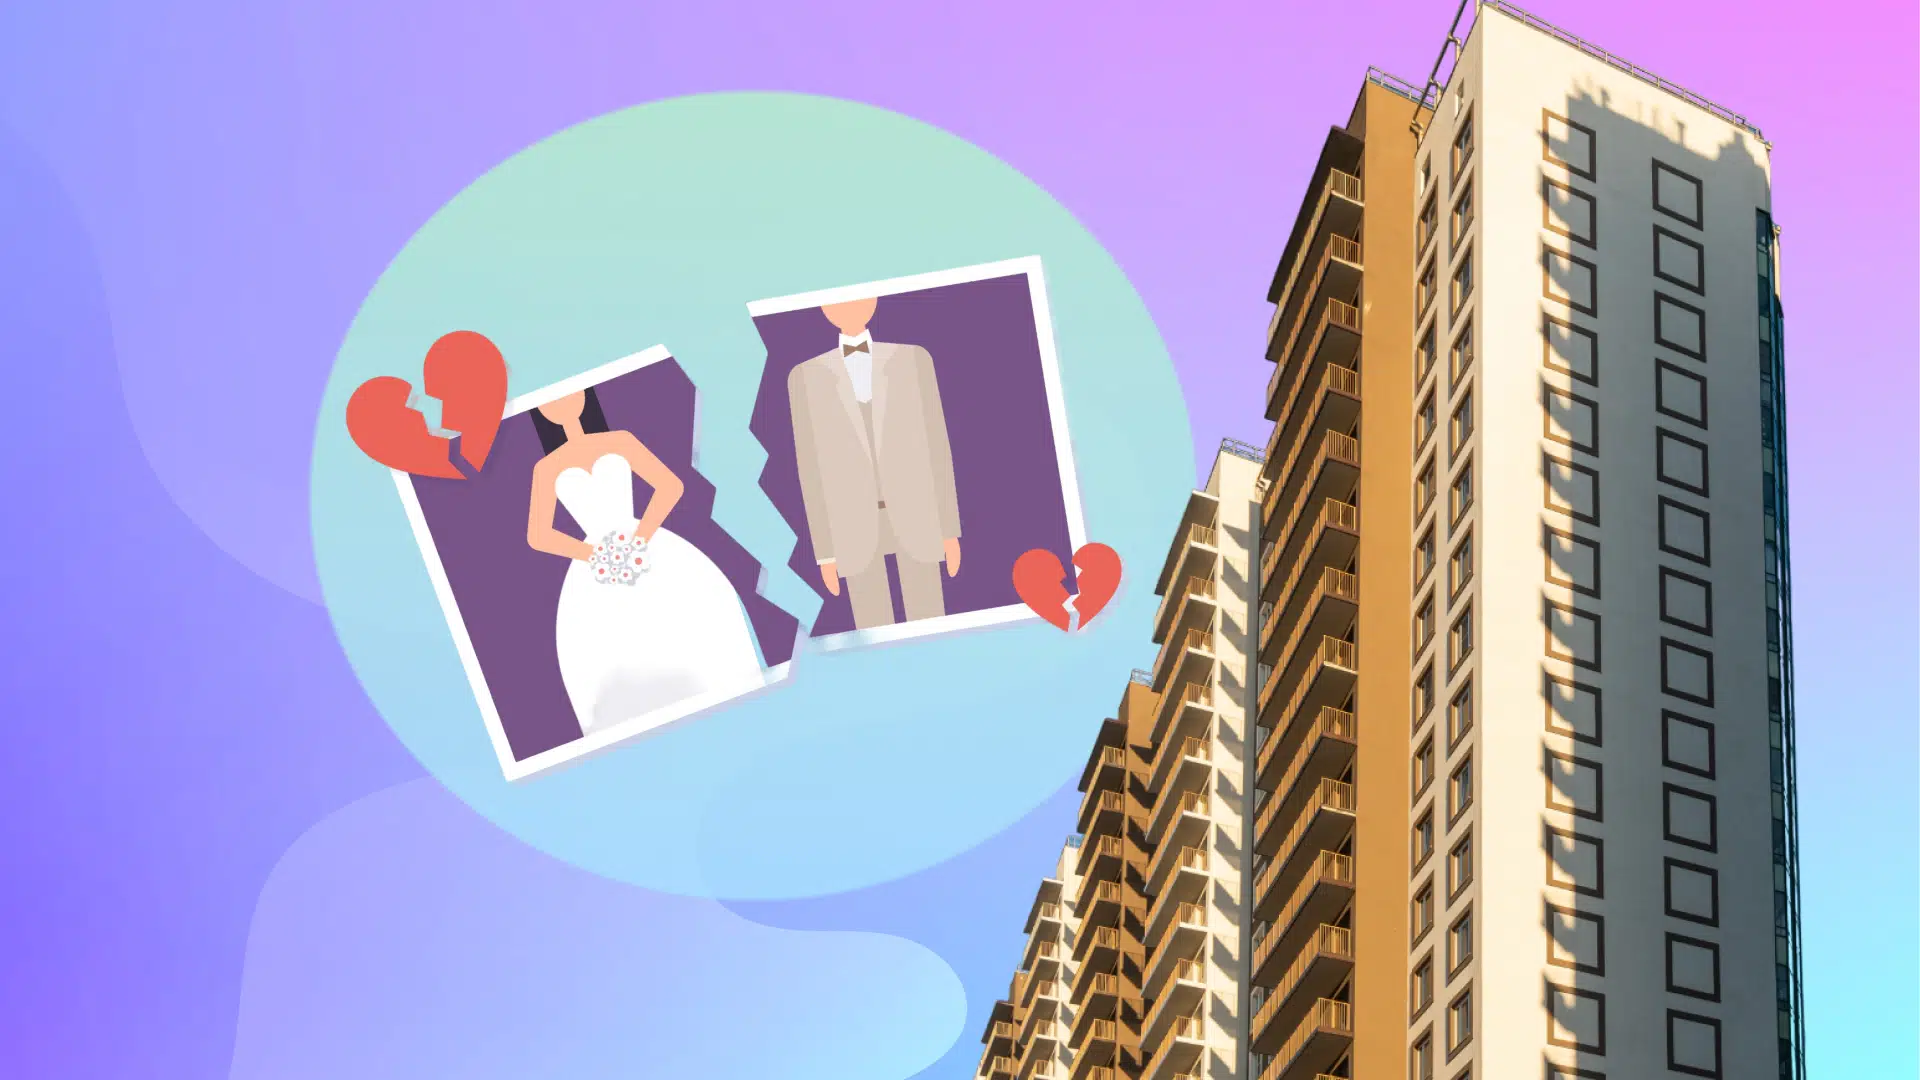 Квартира куплена до брака имеет ли муж на нее право